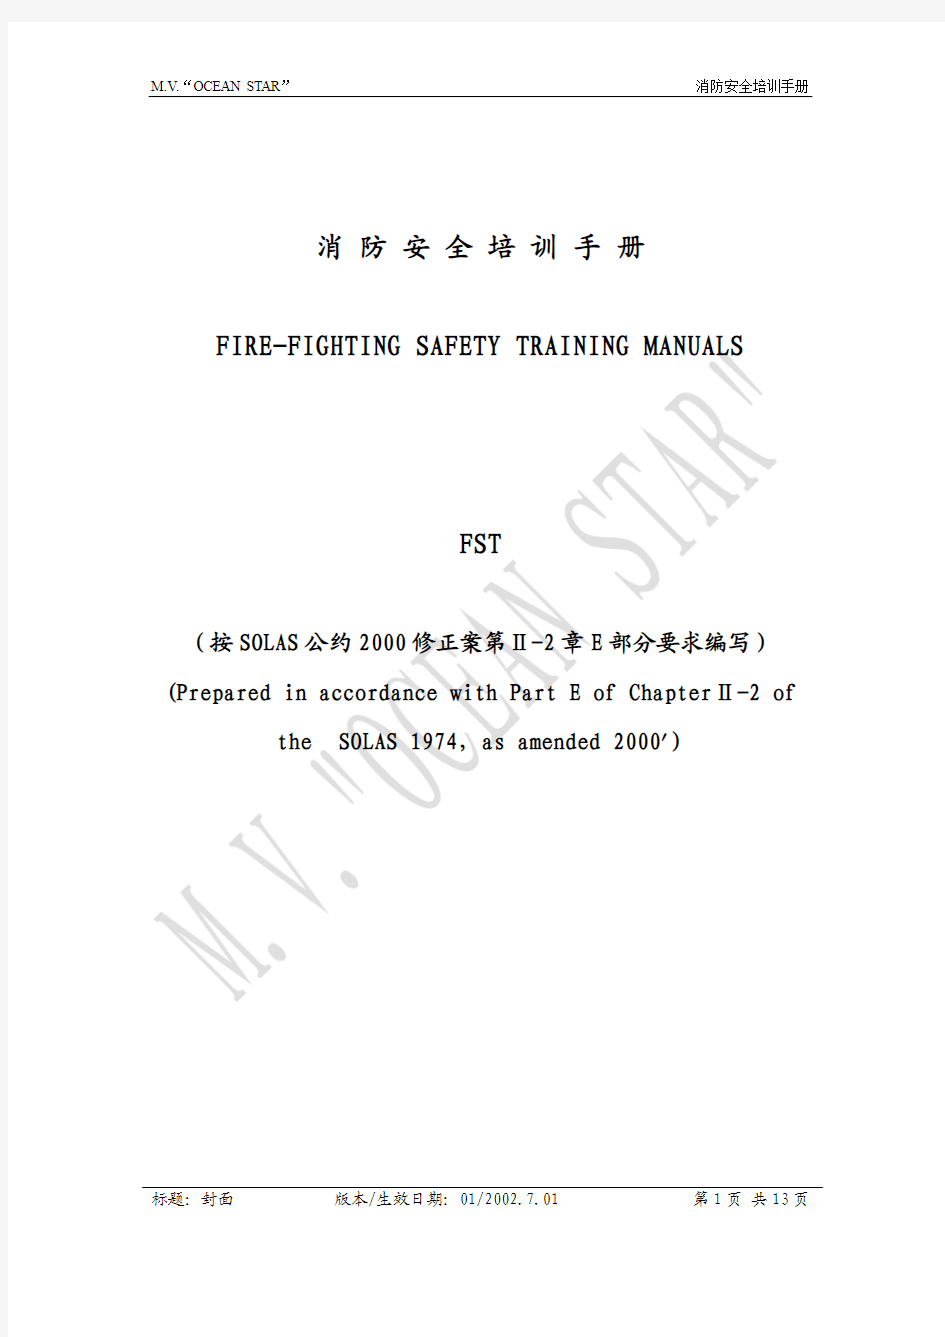 船舶FST(消防安全培训手册)